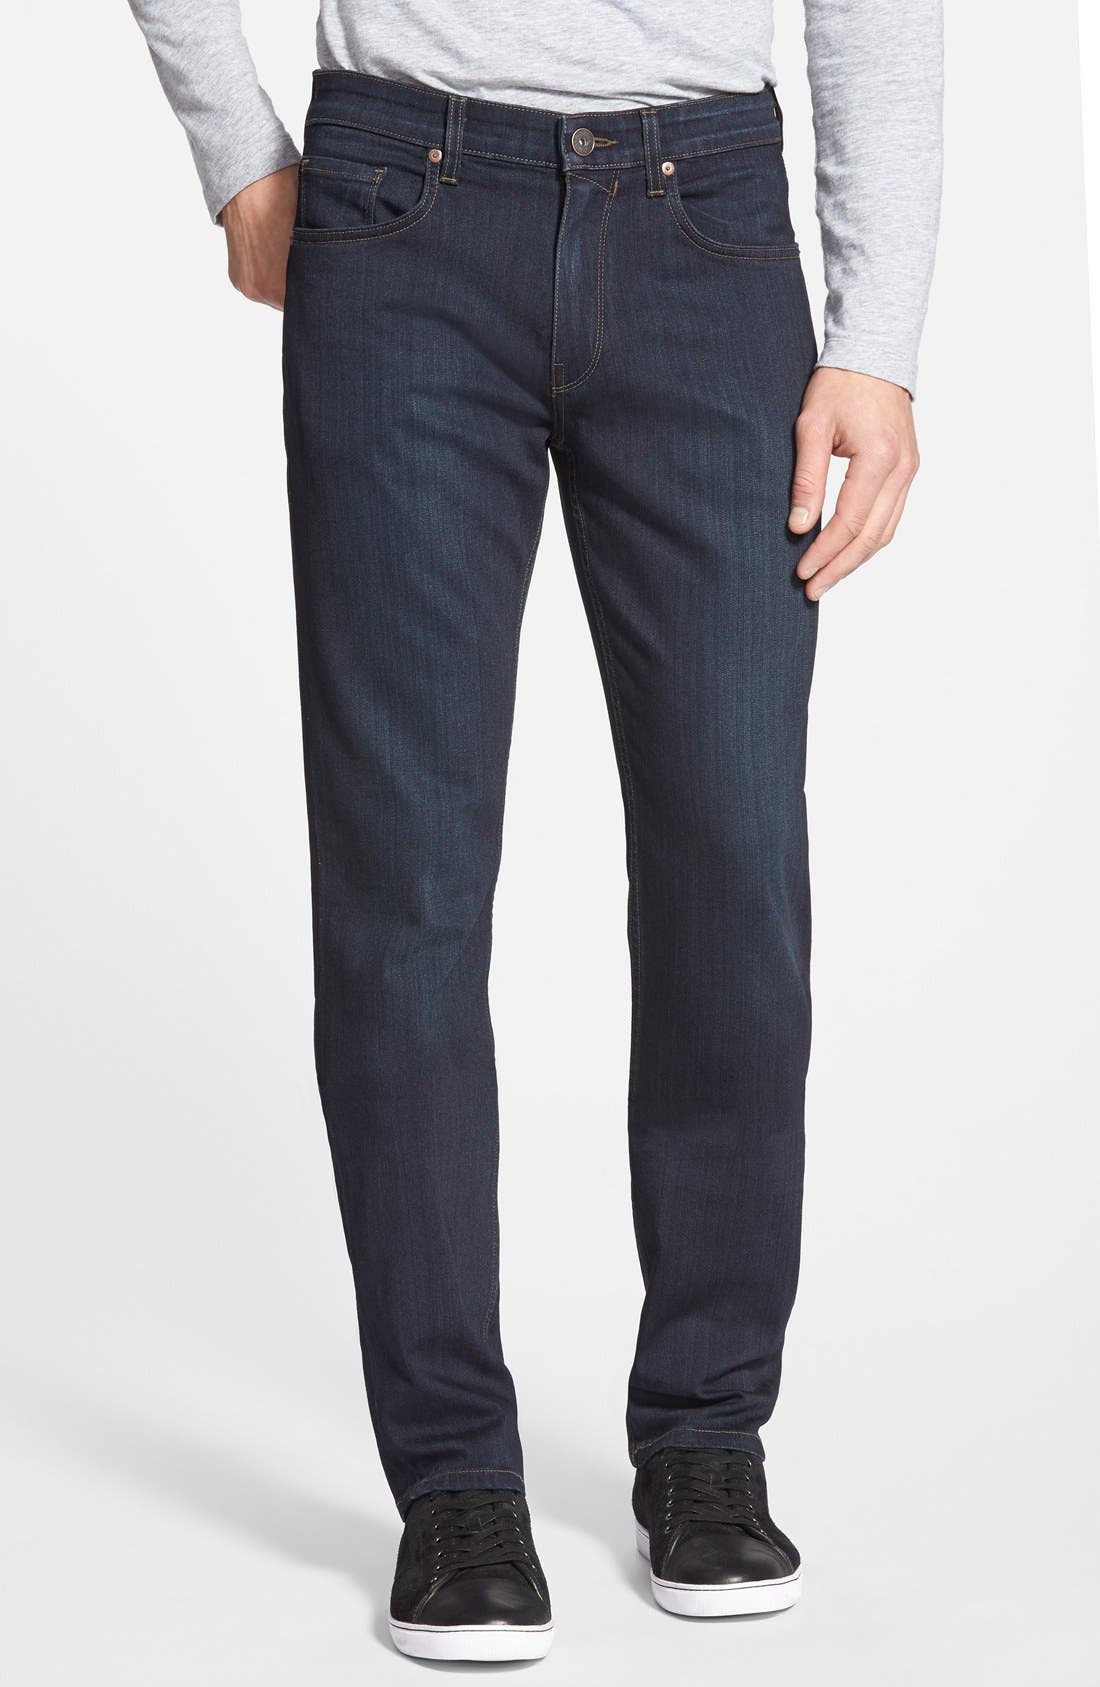 Men's PAIGE Jeans | Nordstrom